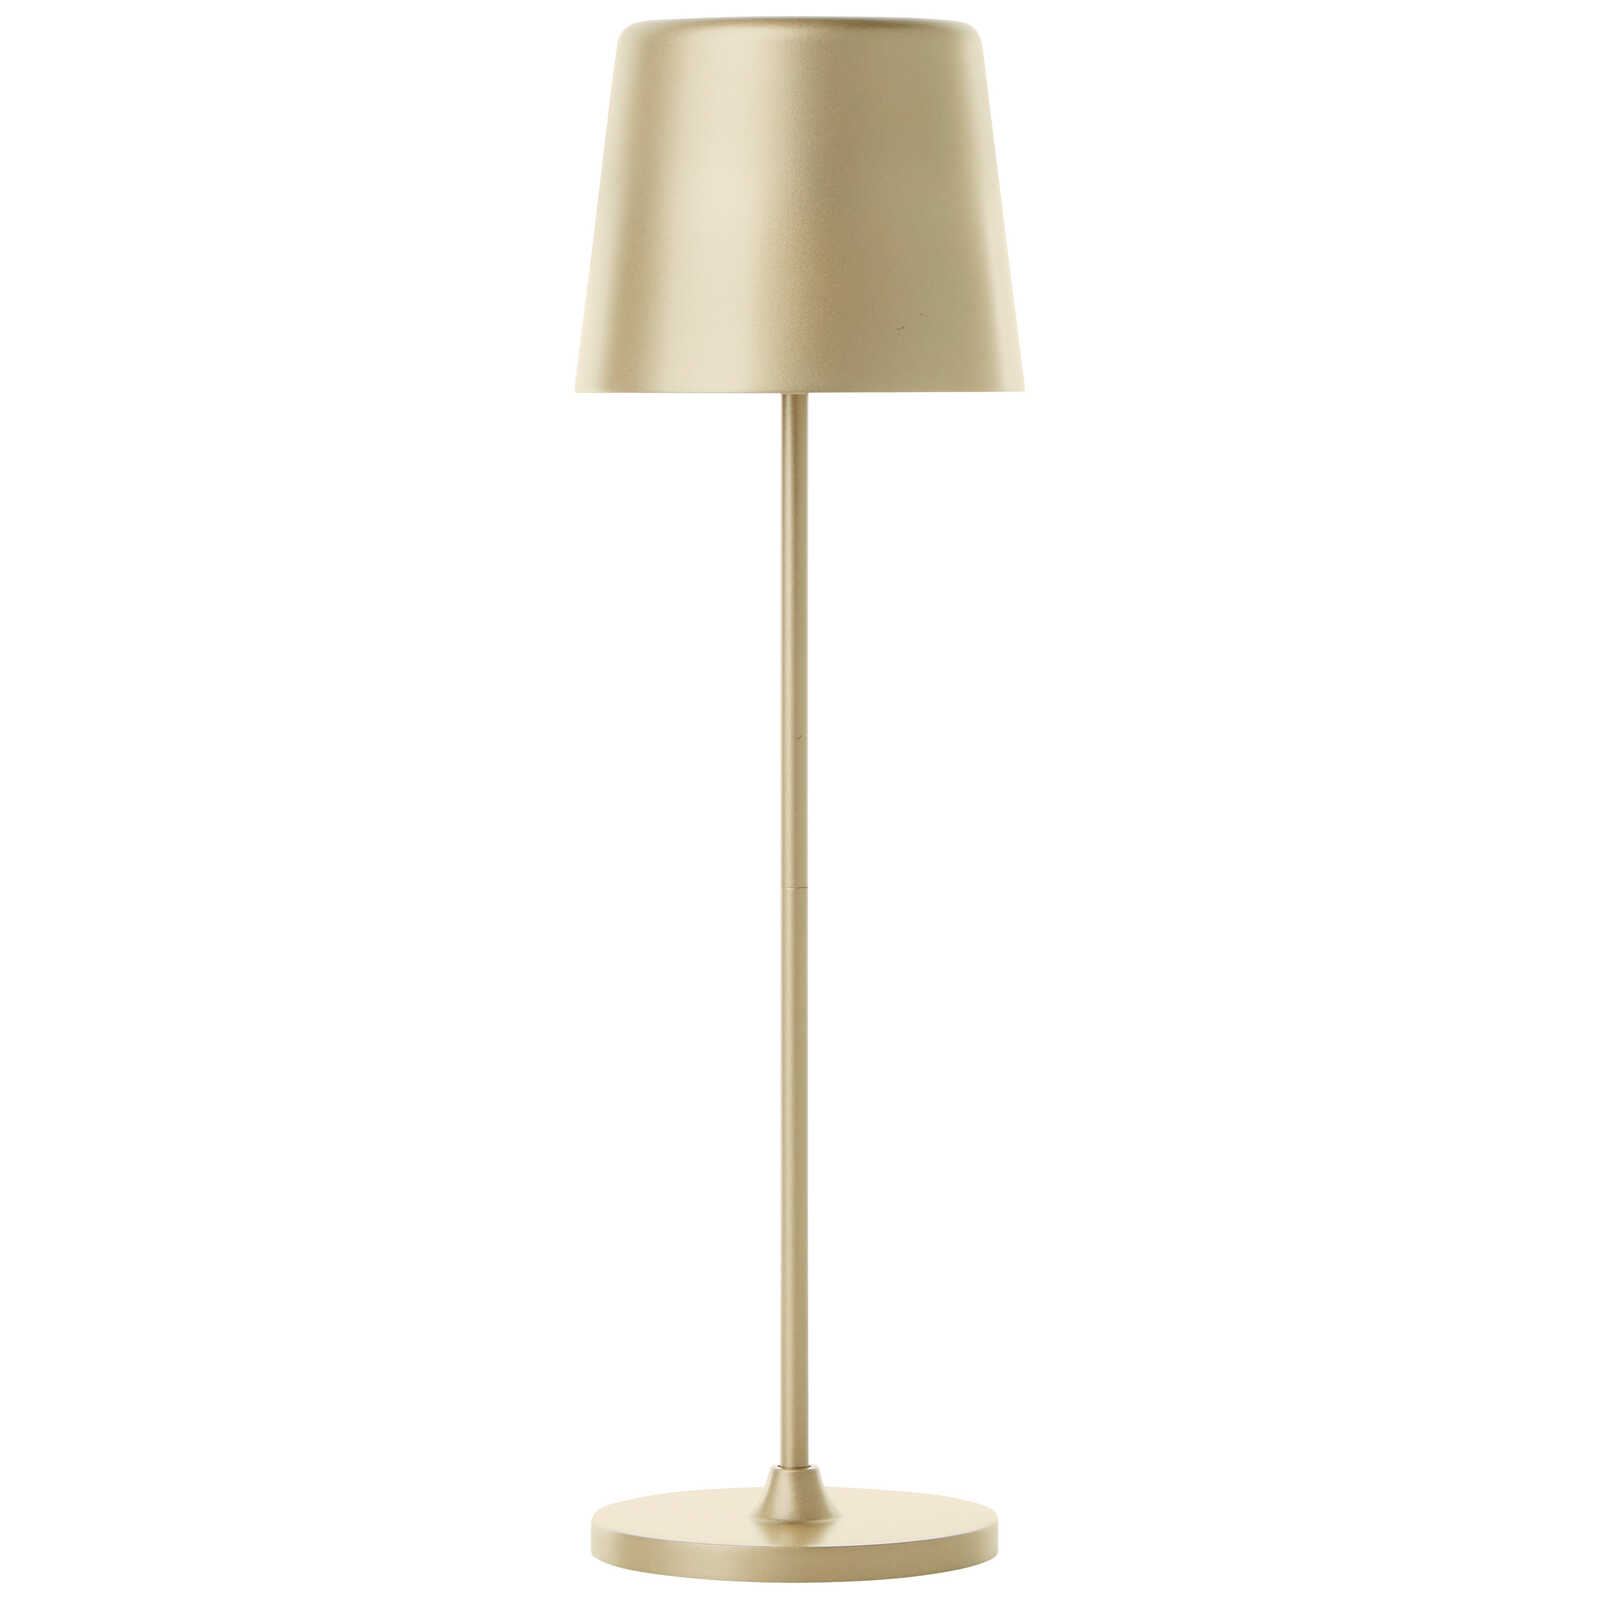             Metalen tafellamp - Cosy 2 - Goud
        